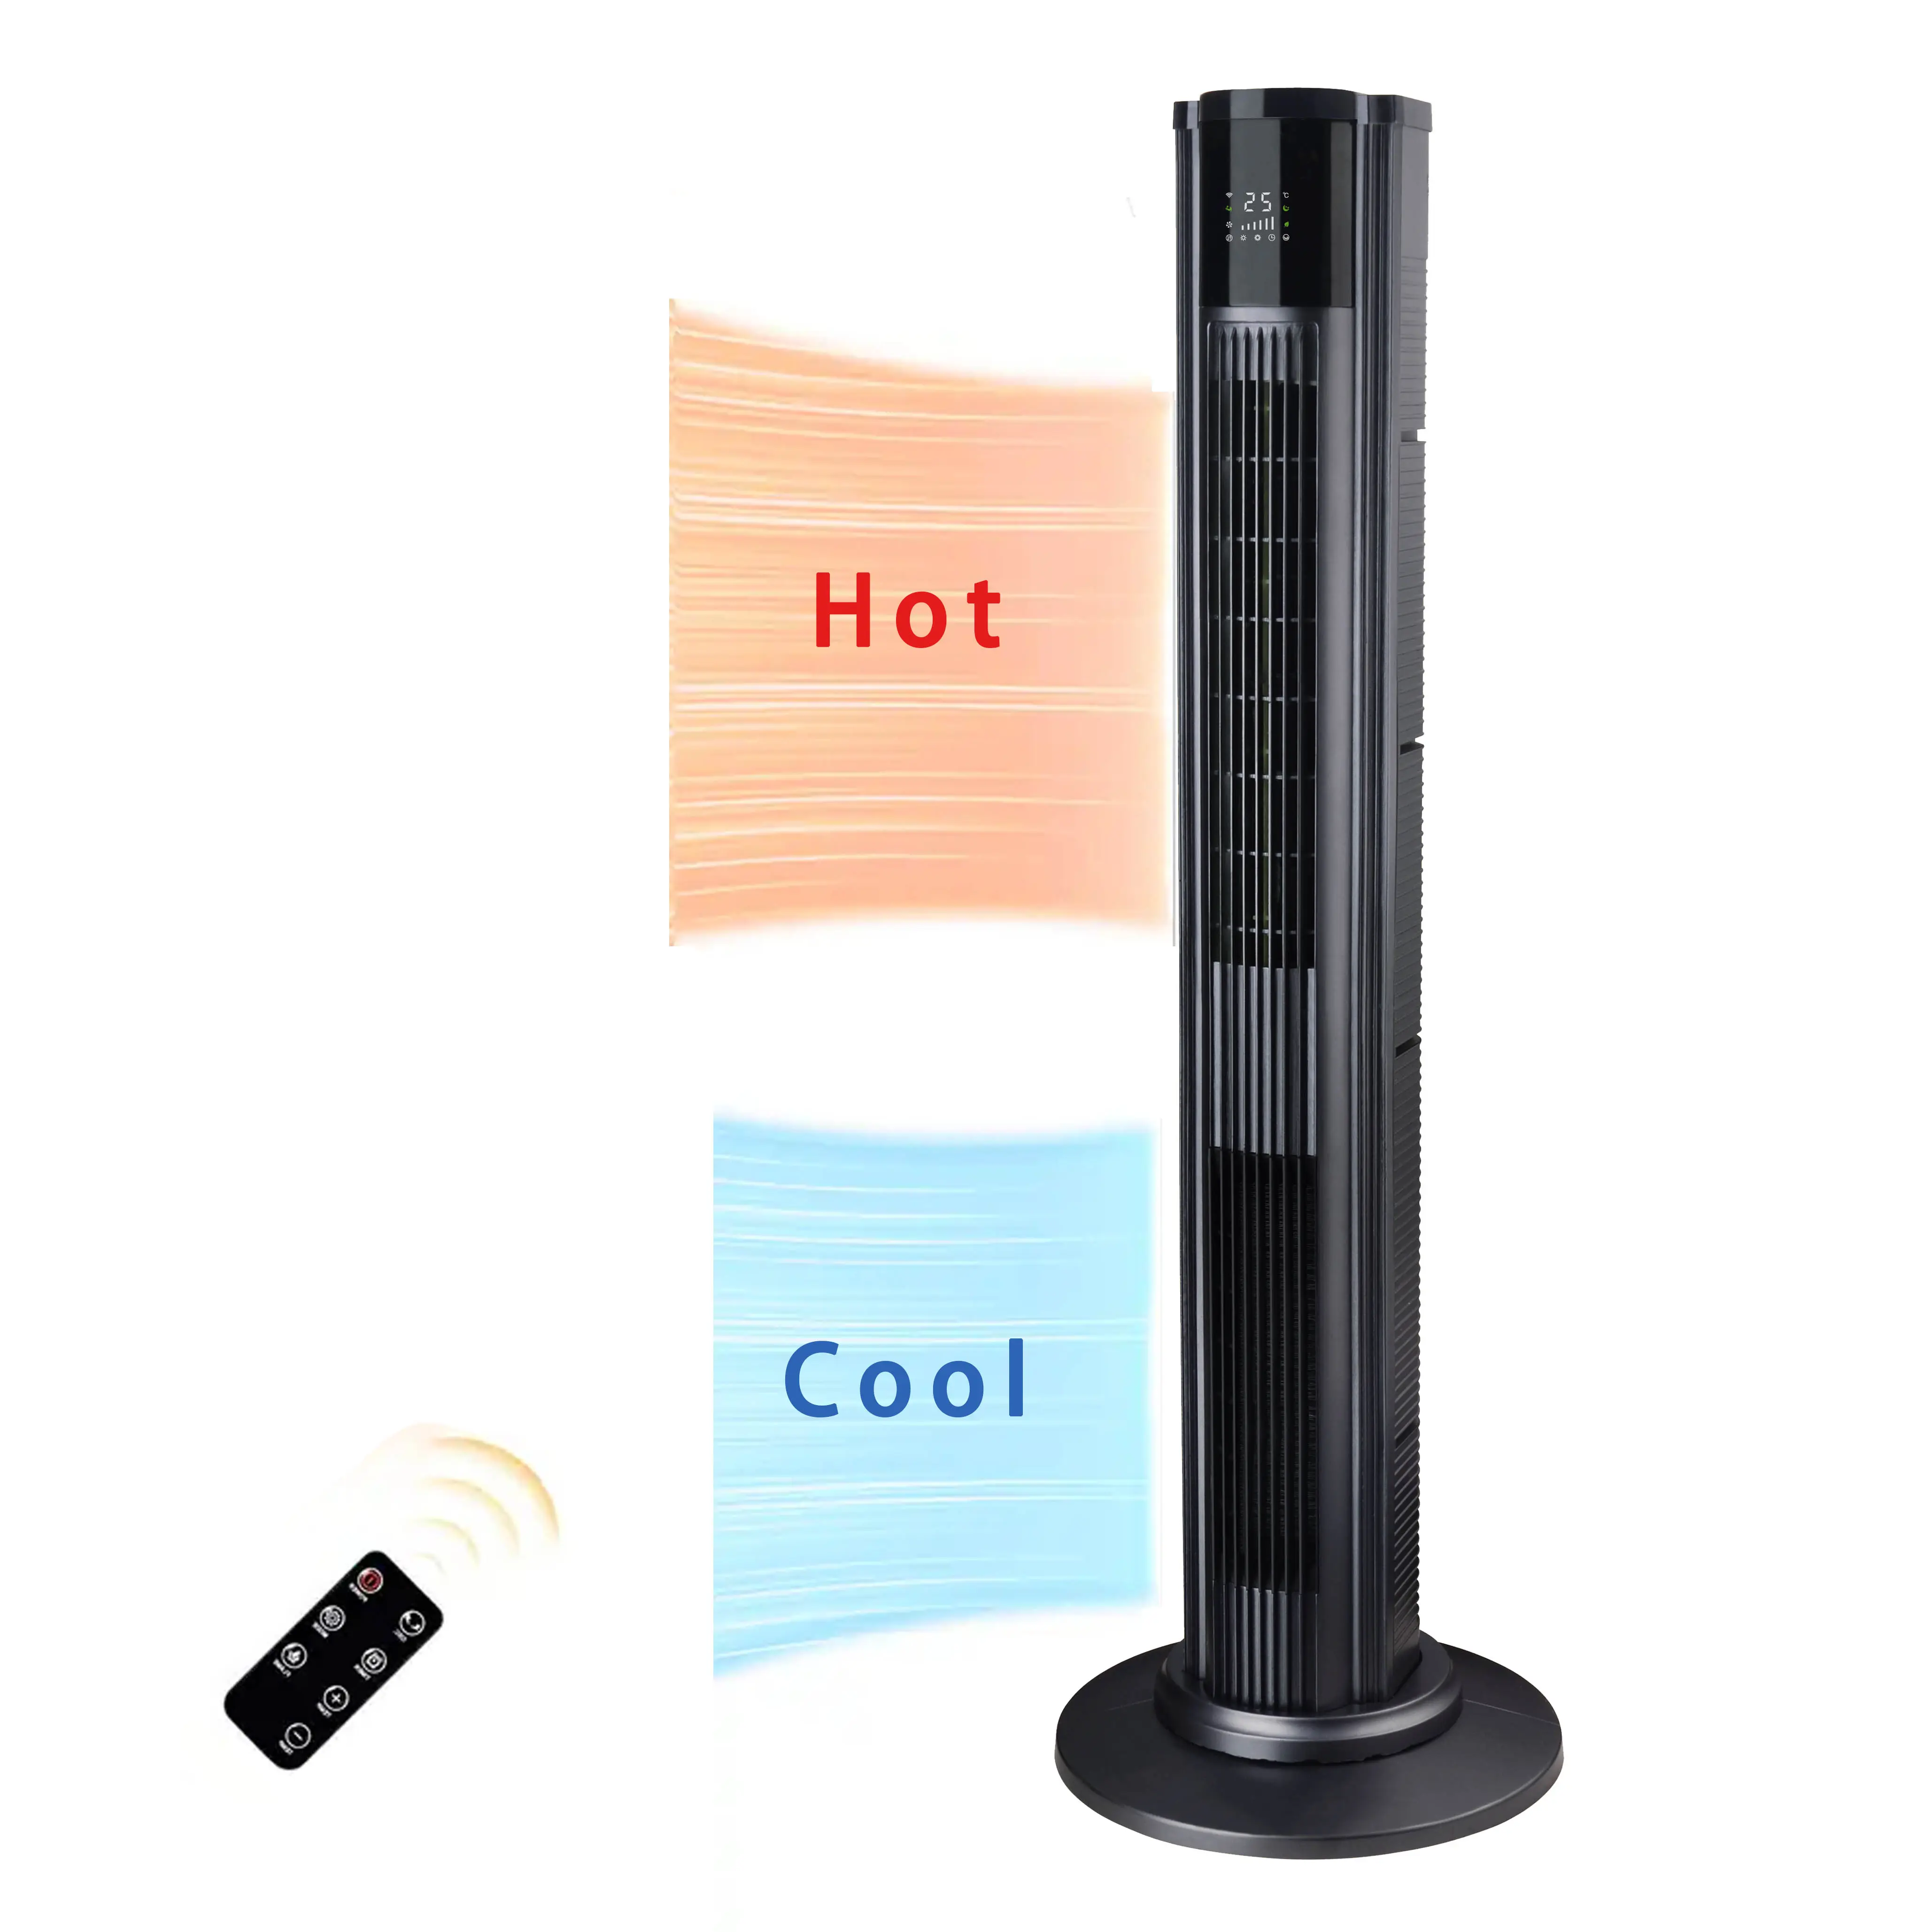 Лидер продаж, зимний эфирный нагреватель 2 в 1, холодный и горячий вентилятор, обогреватель, защита от перегрева, Электрический нагреватель